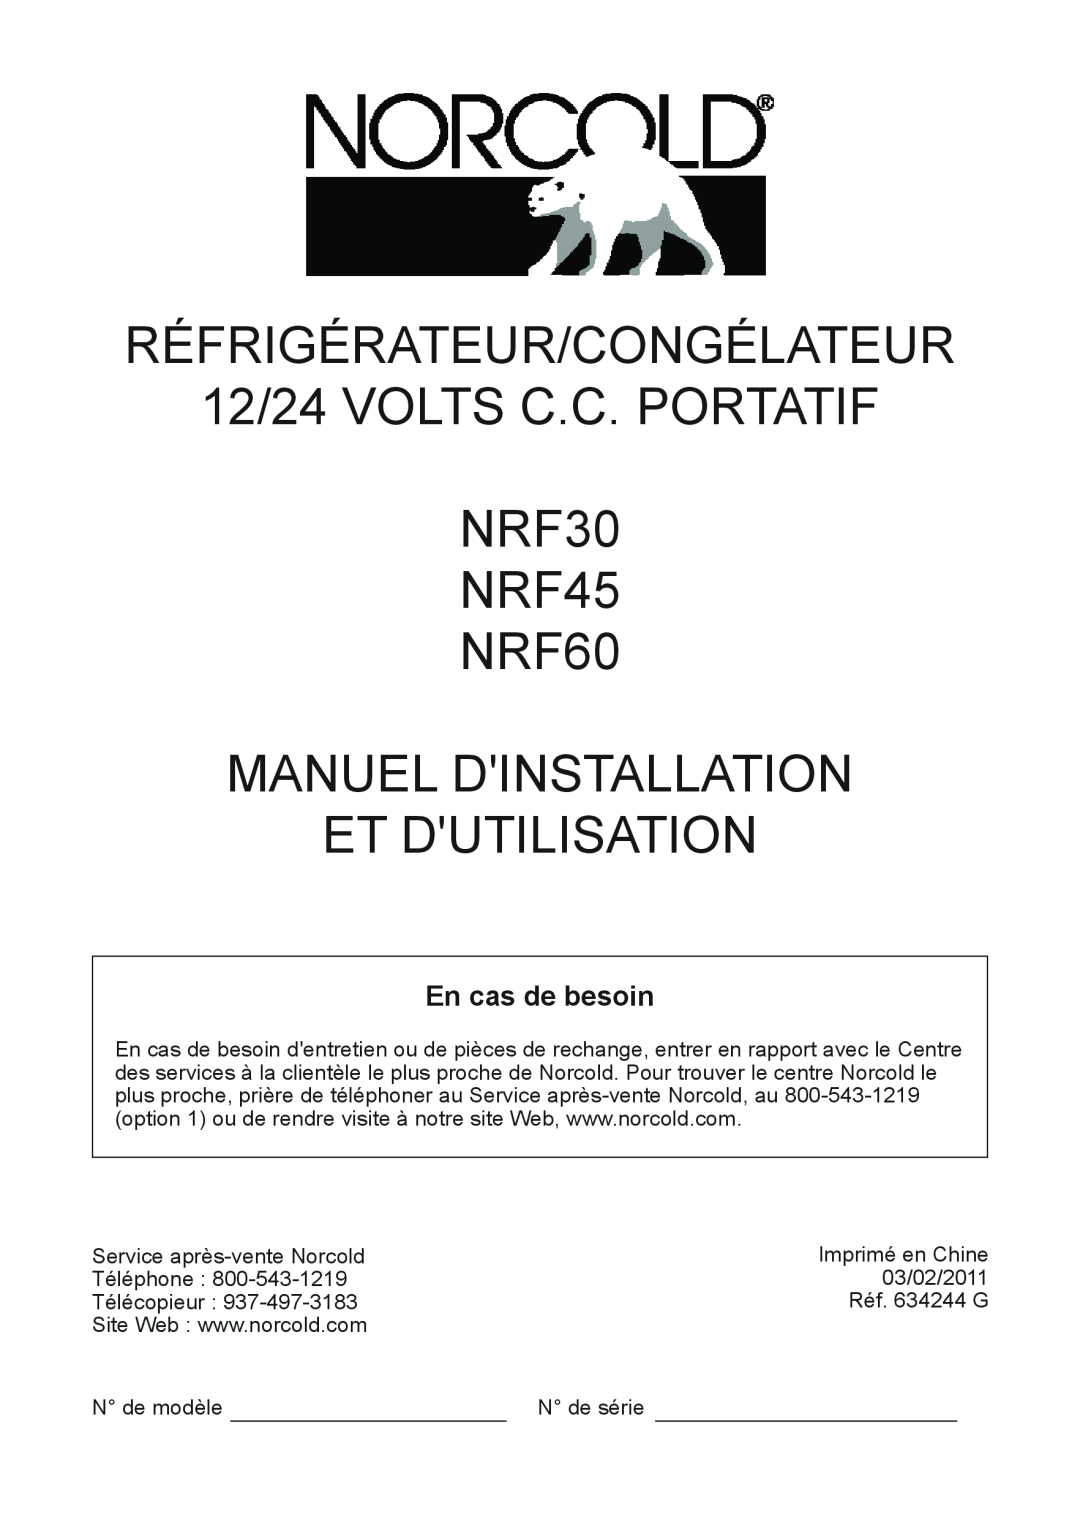 Norcold RÉFRIGÉRATEUR/CONGÉLATEUR 12/24 VOLTS C.C. PORTATIF NRF30 NRF45 NRF60, Manuel Dinstallation Et Dutilisation 